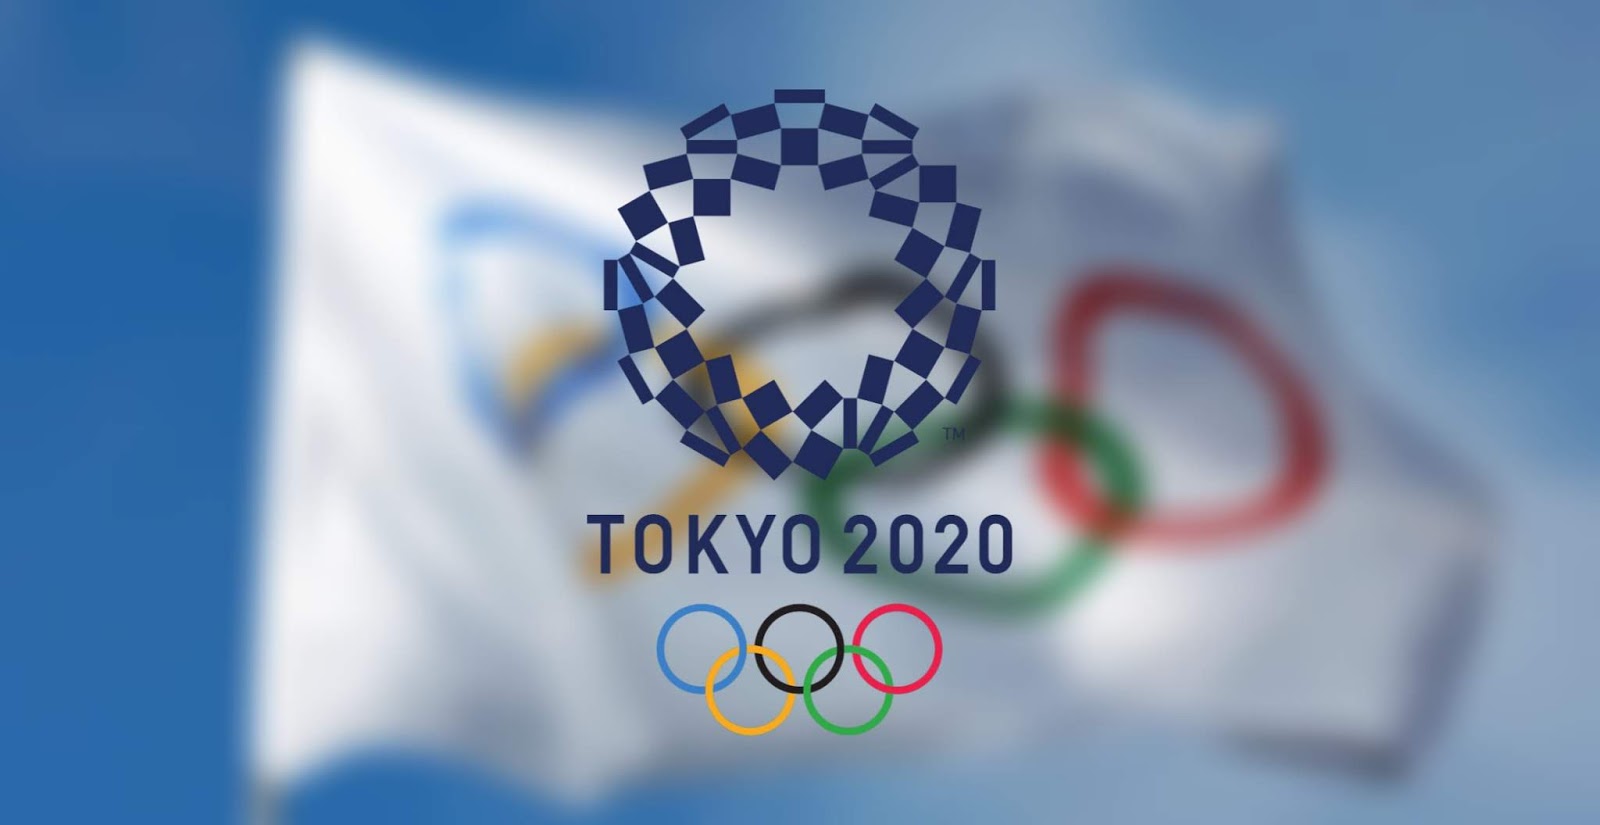 Jadual sukan olimpik 2020